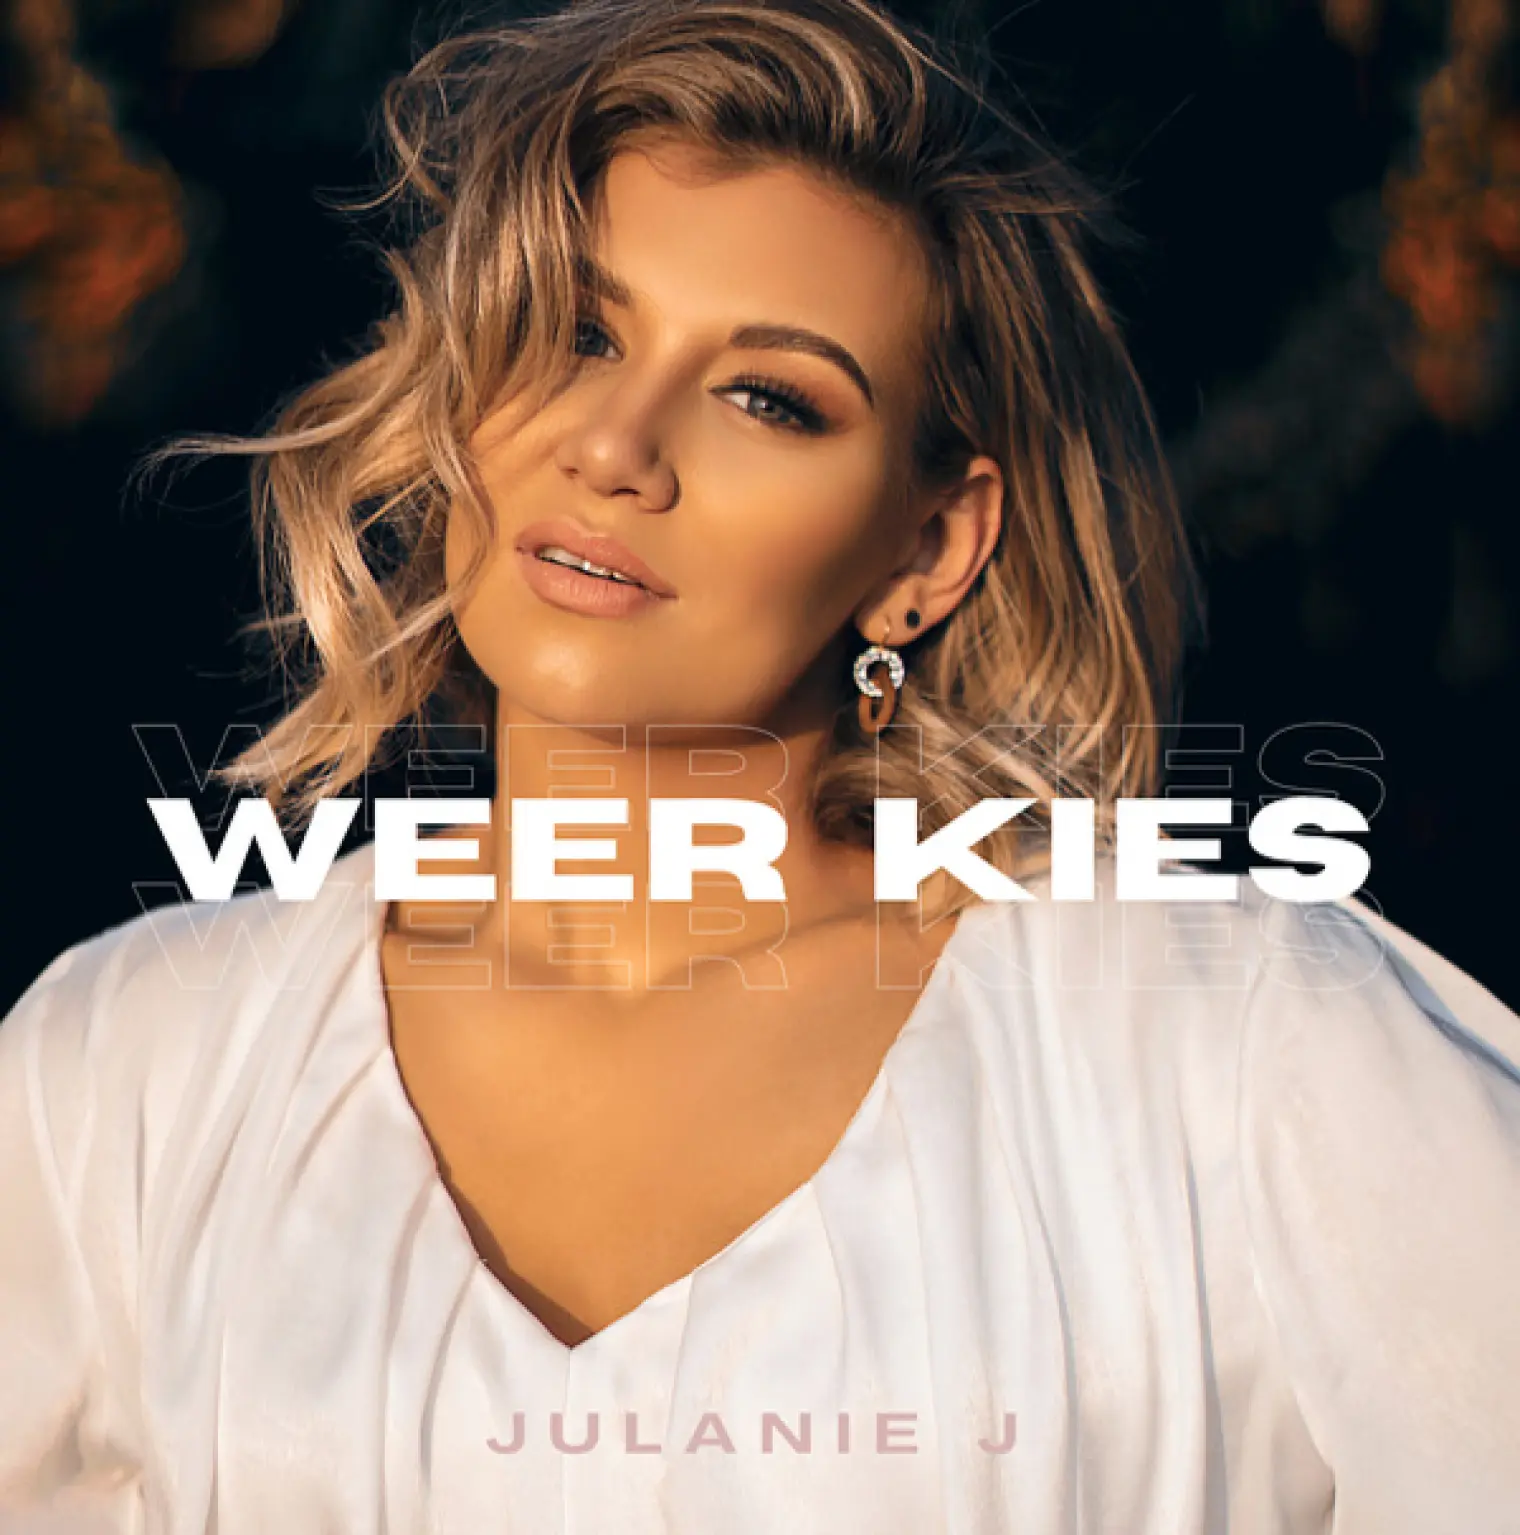 Weer Kies -  Julanie J 